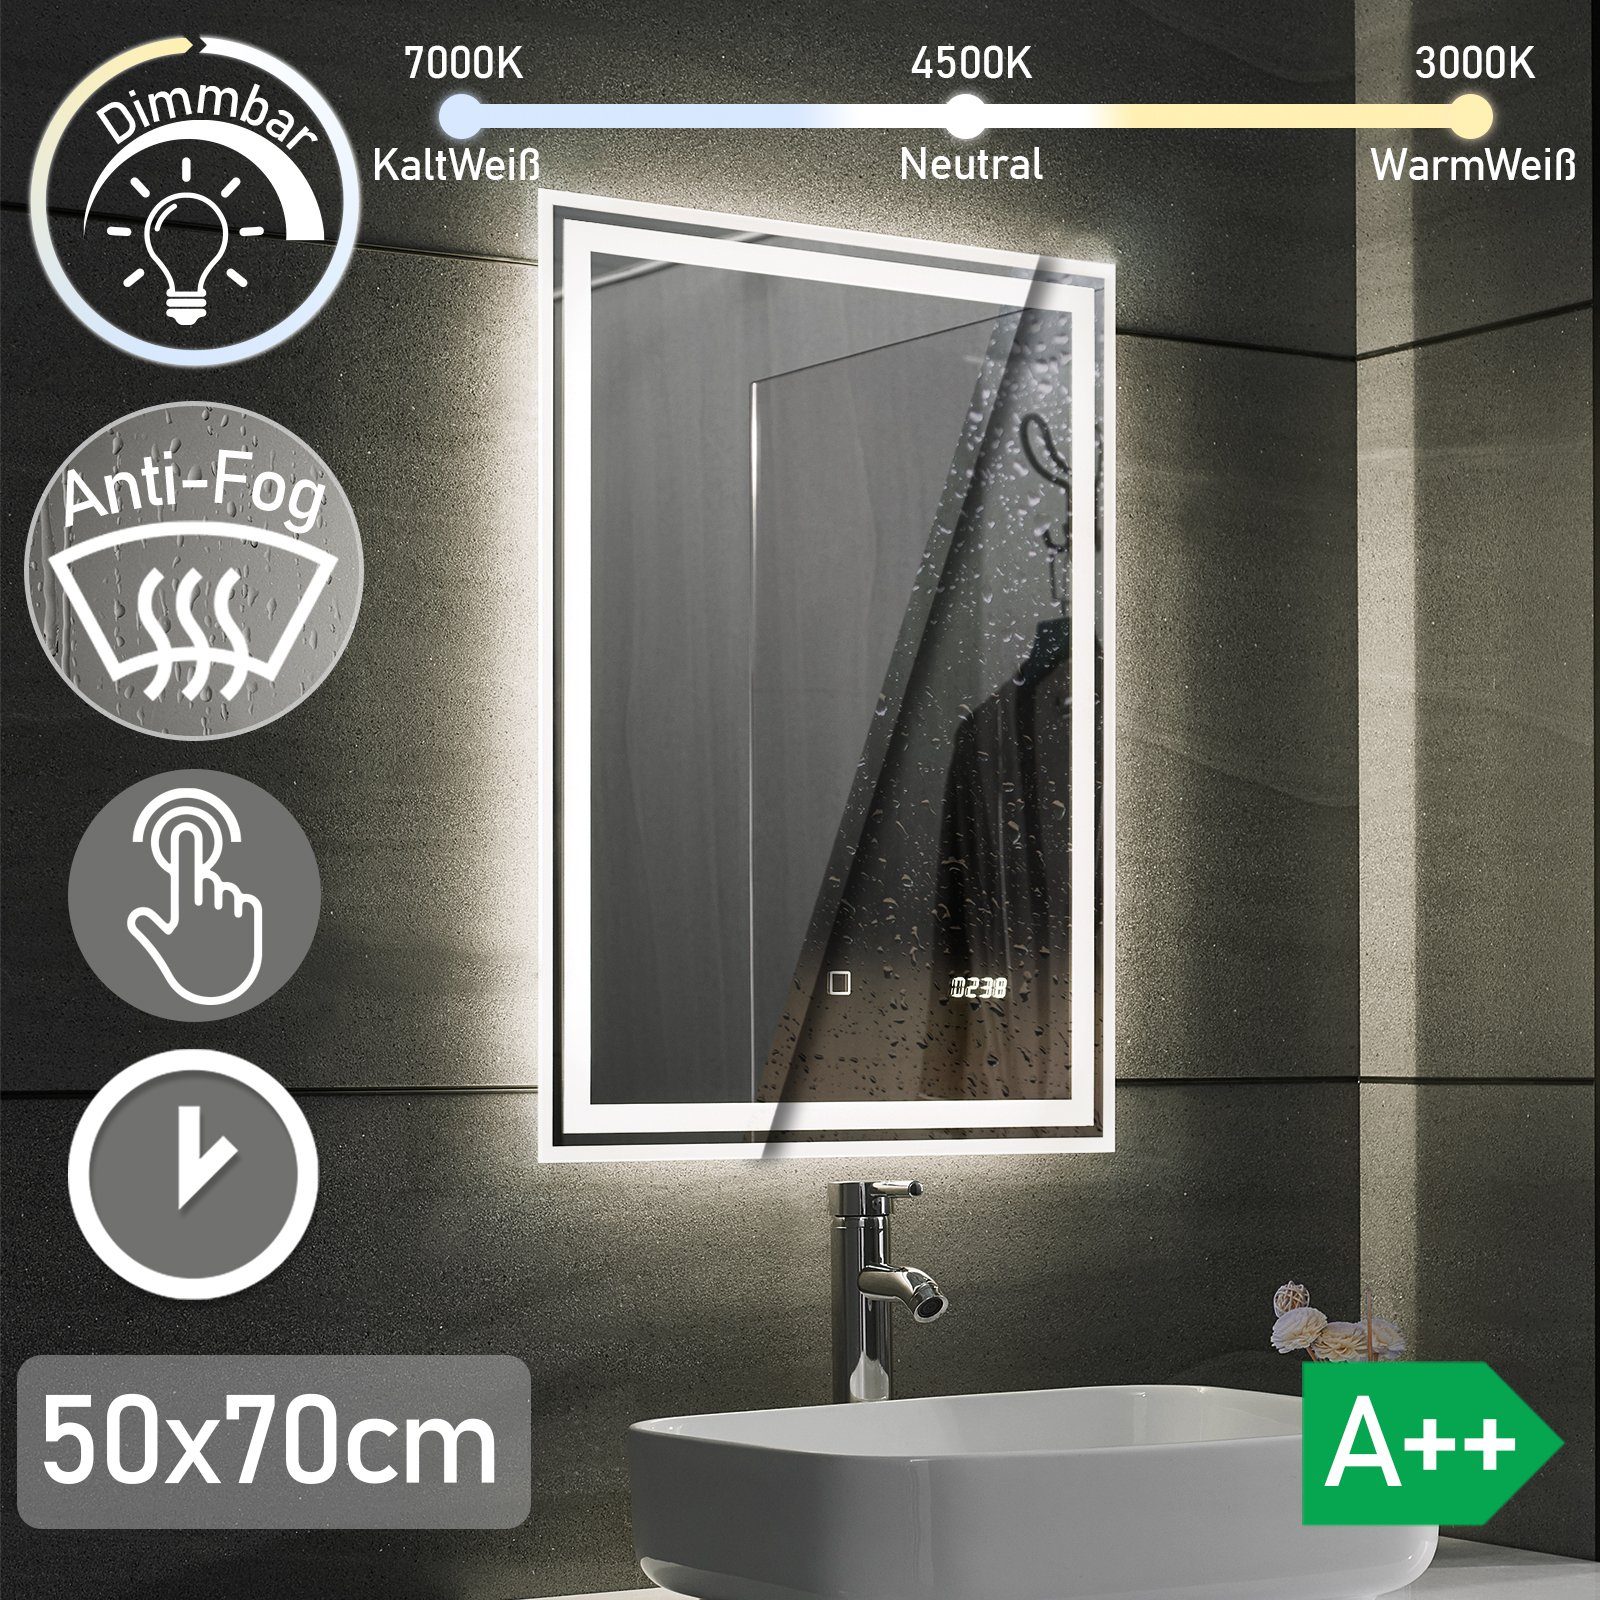 x 3000-7000K Badspiegel 70 - Energiesparend, Badspiegel Beschlagfrei, Aquamarin Dimmbar, LED 50 cm